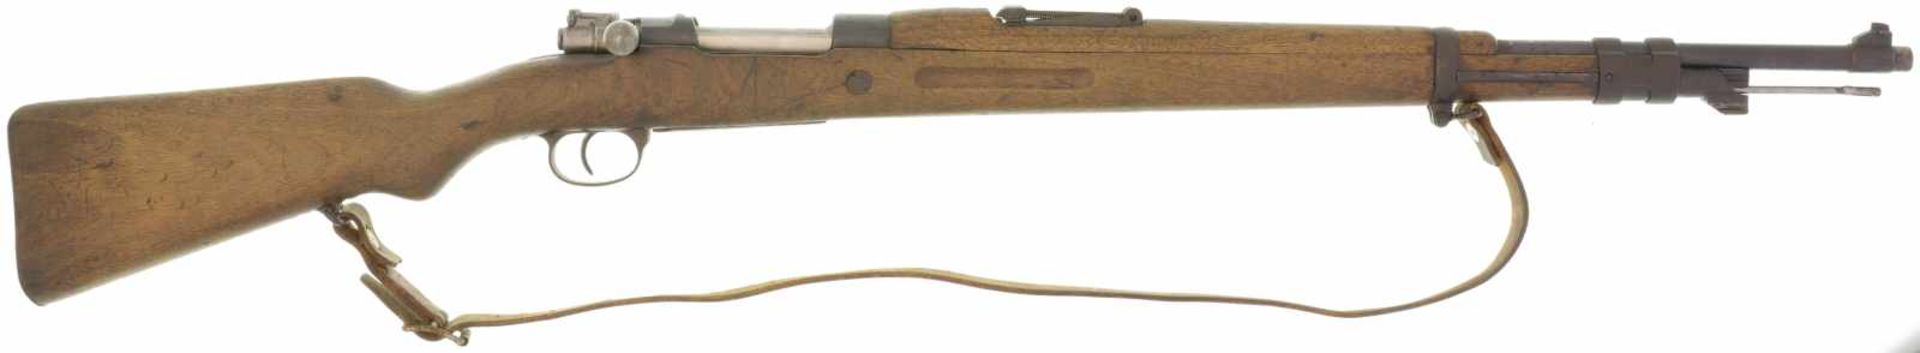 Repetiergewehr, span. K98, La Coruna, Kal. 8x57IS. K98 gefertigt 1949 im spanischen Arsenal "La